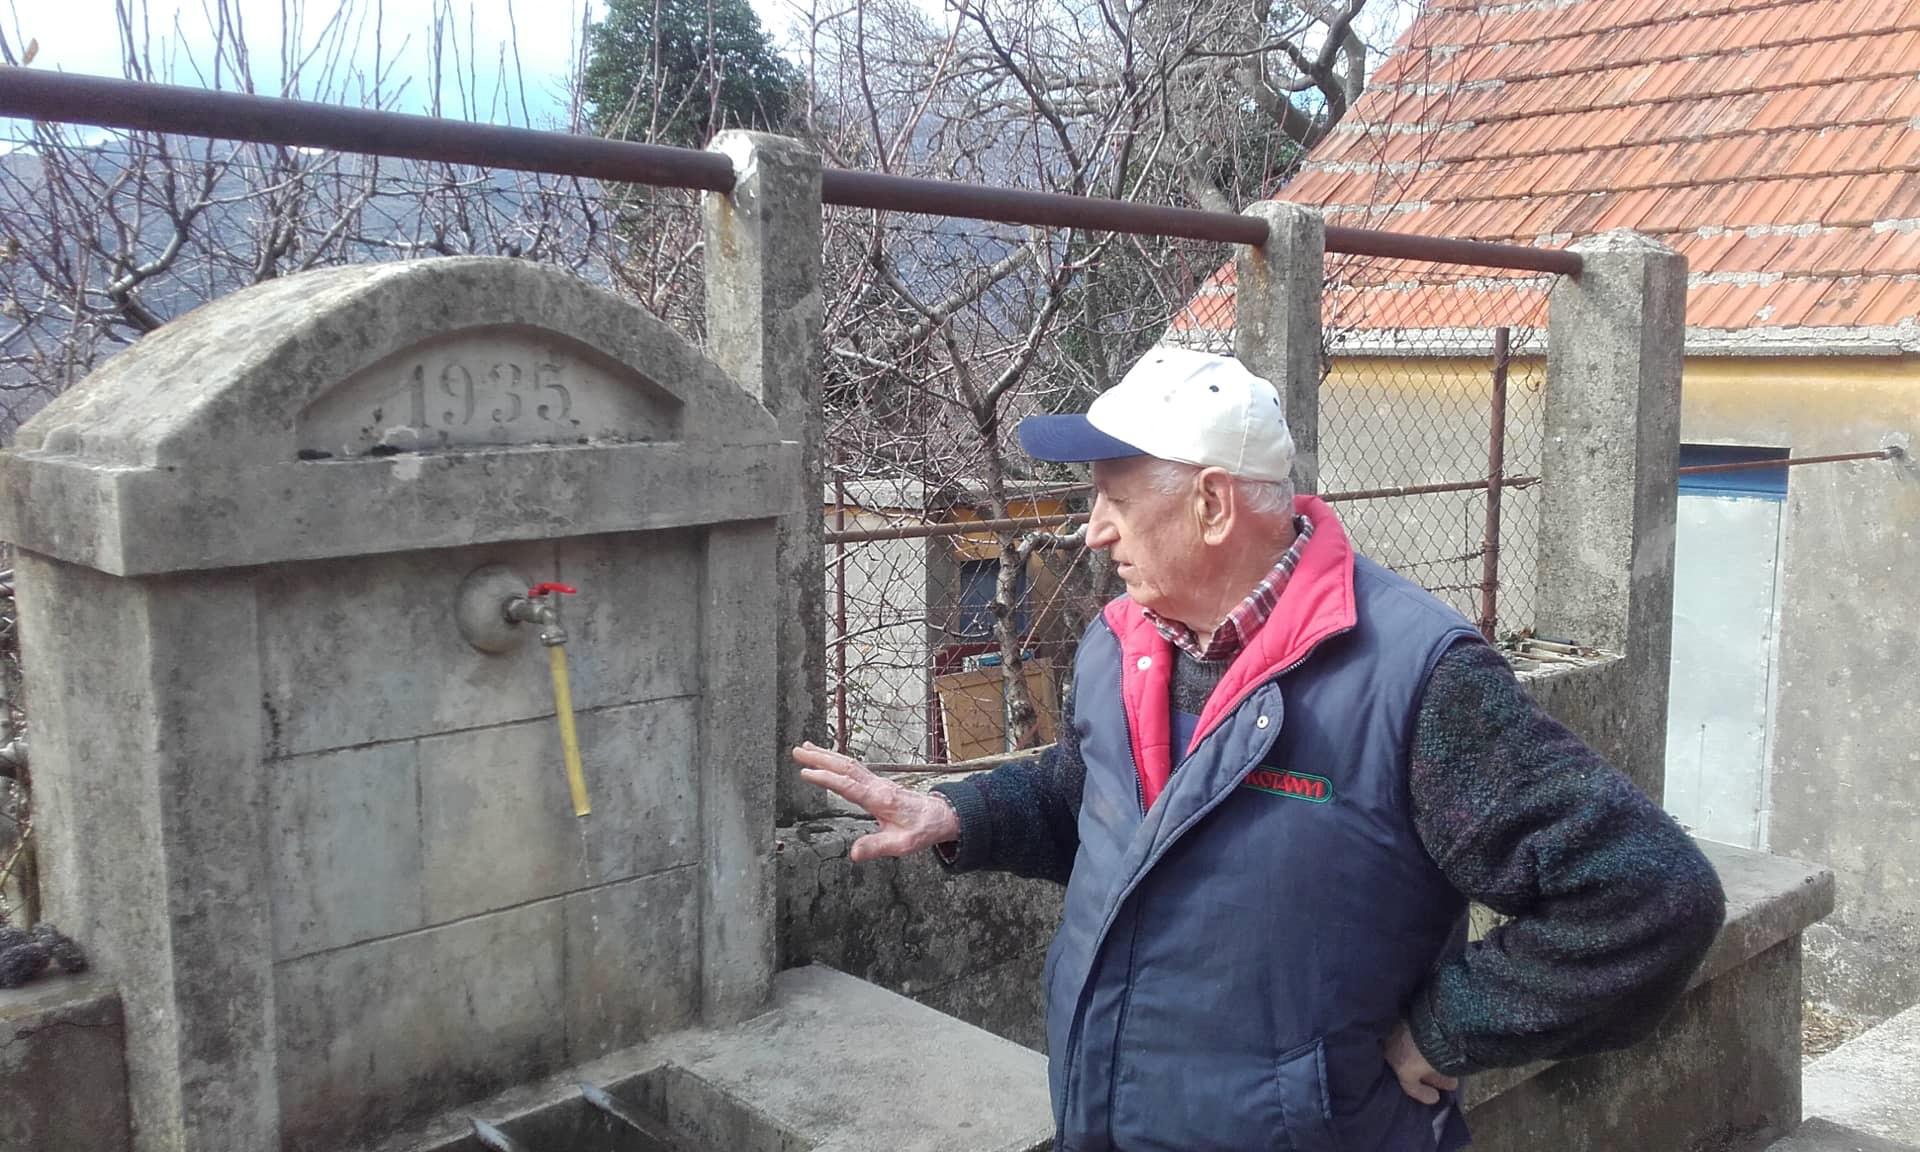 Špine su u Kozici suhe, stari izvor Vrutak presušio, vodovoda nema, čatrnje male..., kaže Zvonko Ravlić